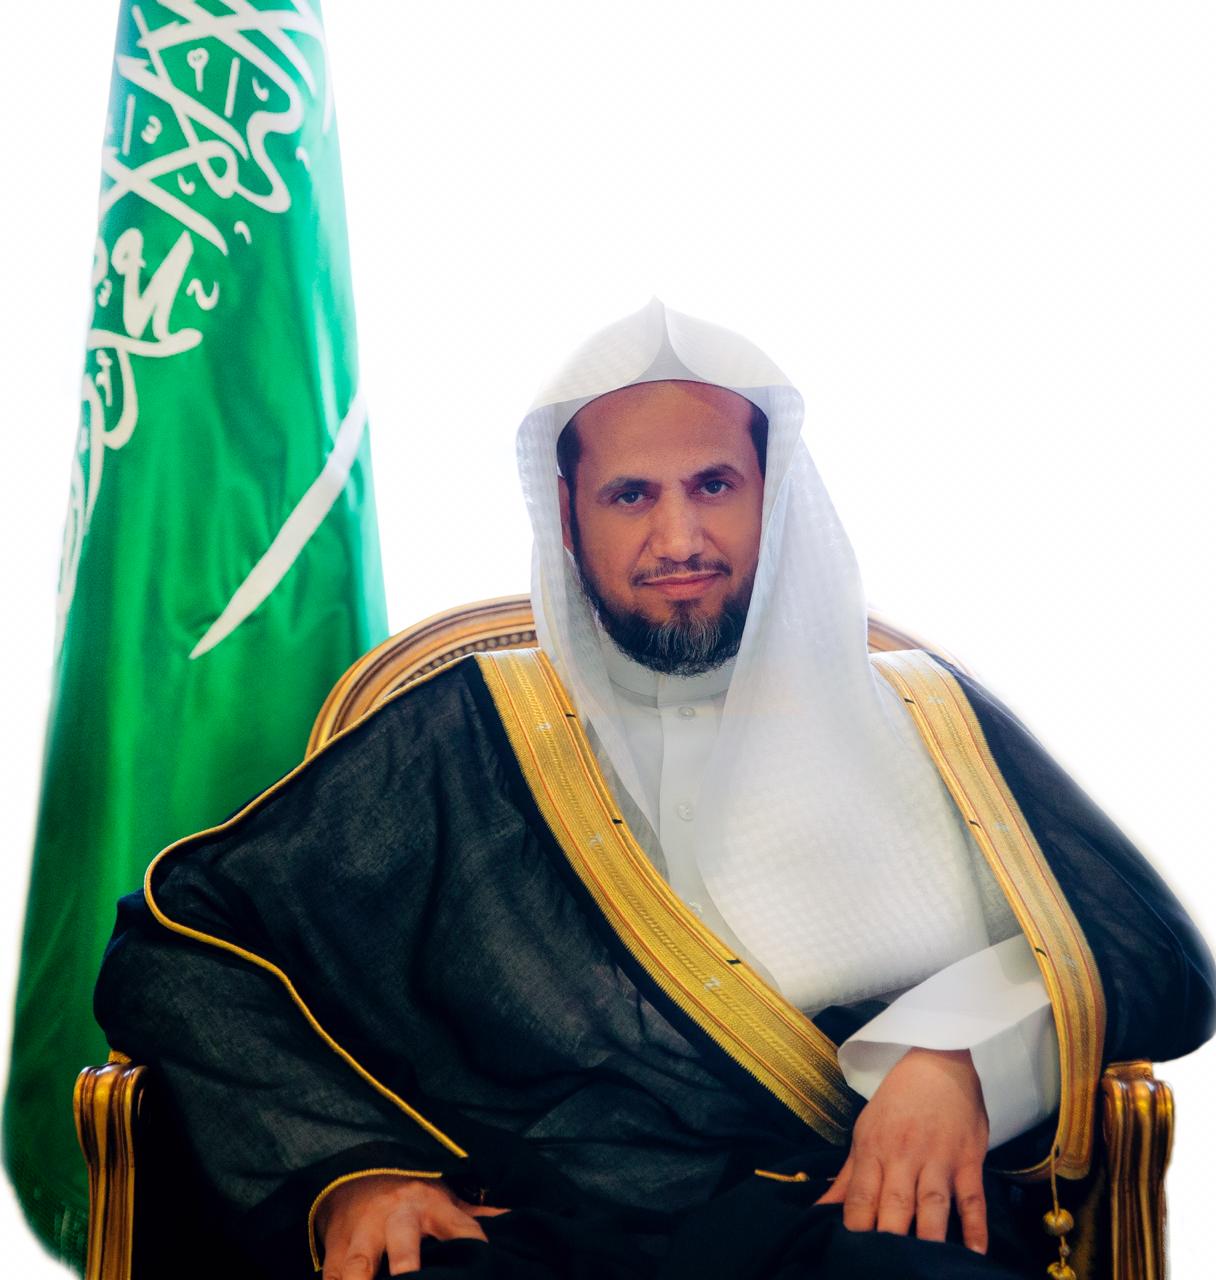 النائب العام: يوم التأسيس يوم خالد جسد مراحل راسخة للدولة السعودية